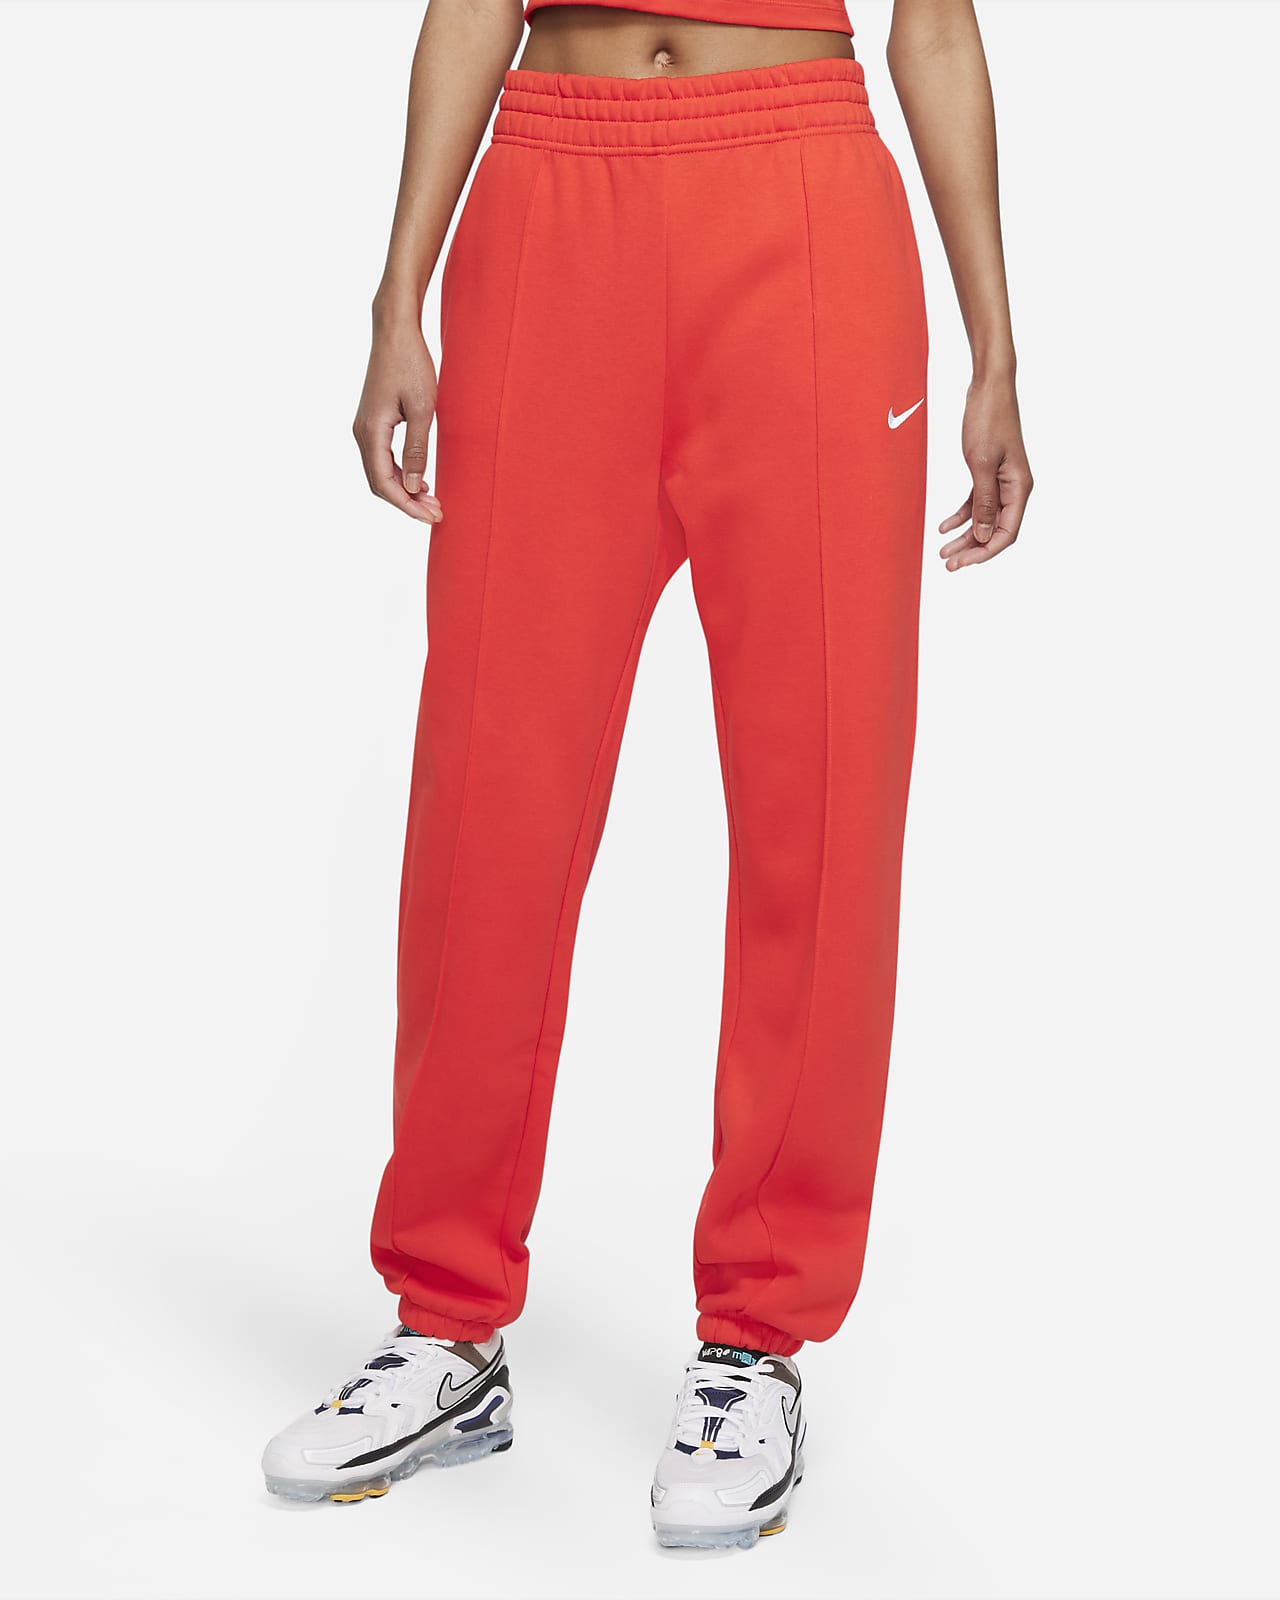 Nike Sportswear Essential Collection Women's Fleece Trousers